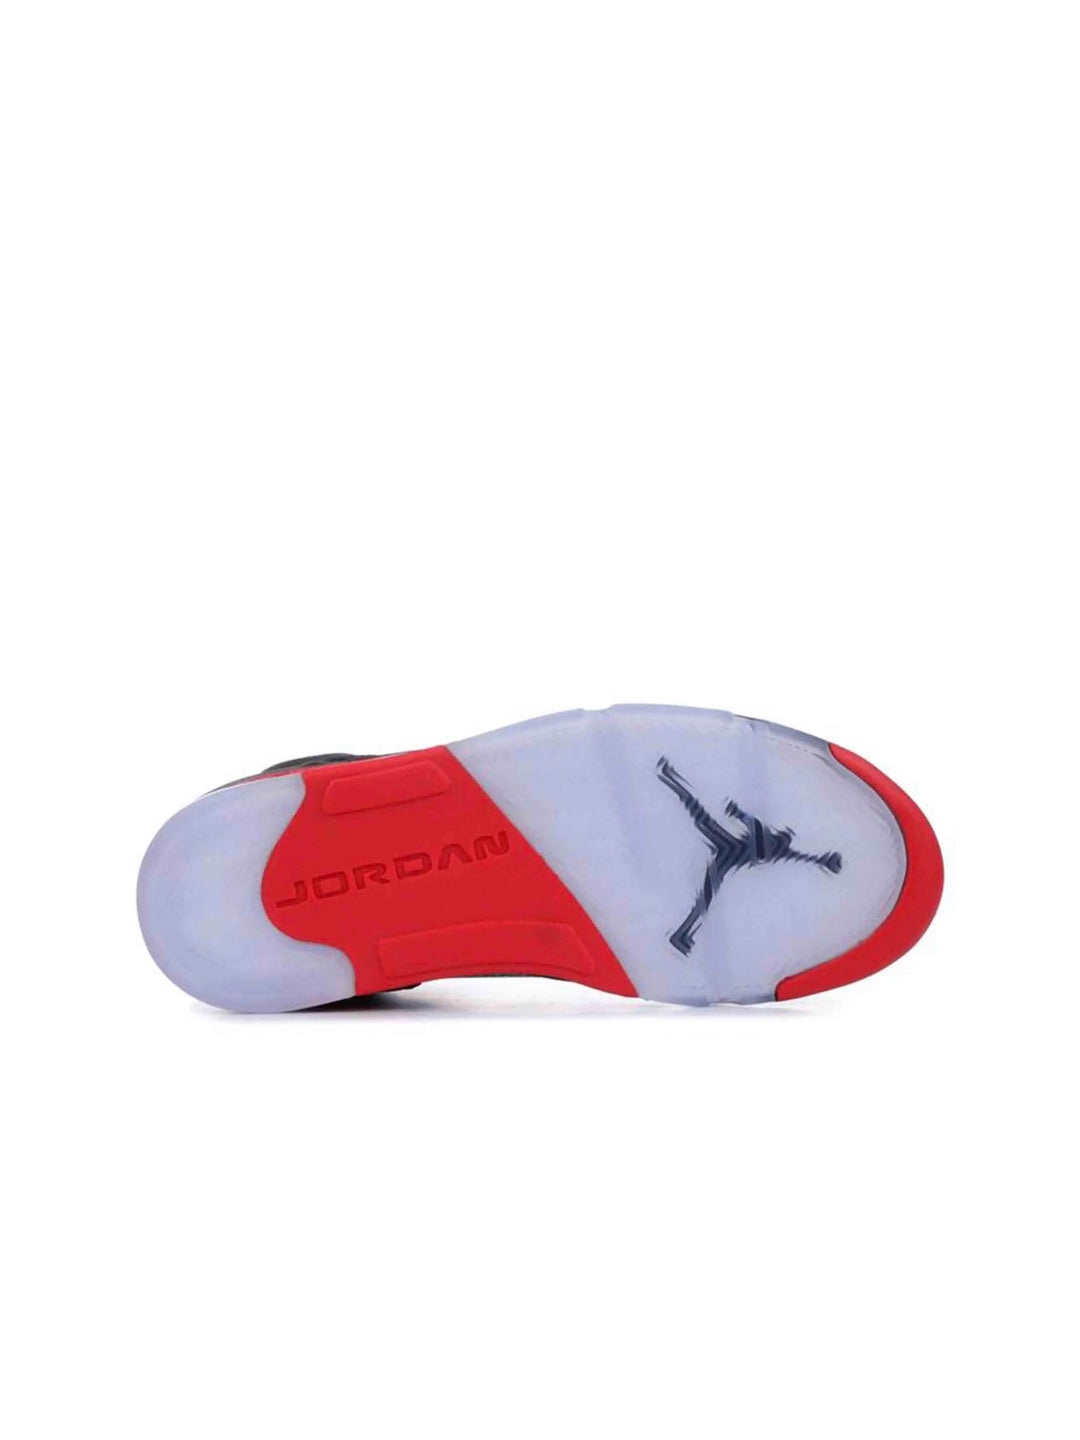 Nike Air Jordan 5 Satin Bred Prior